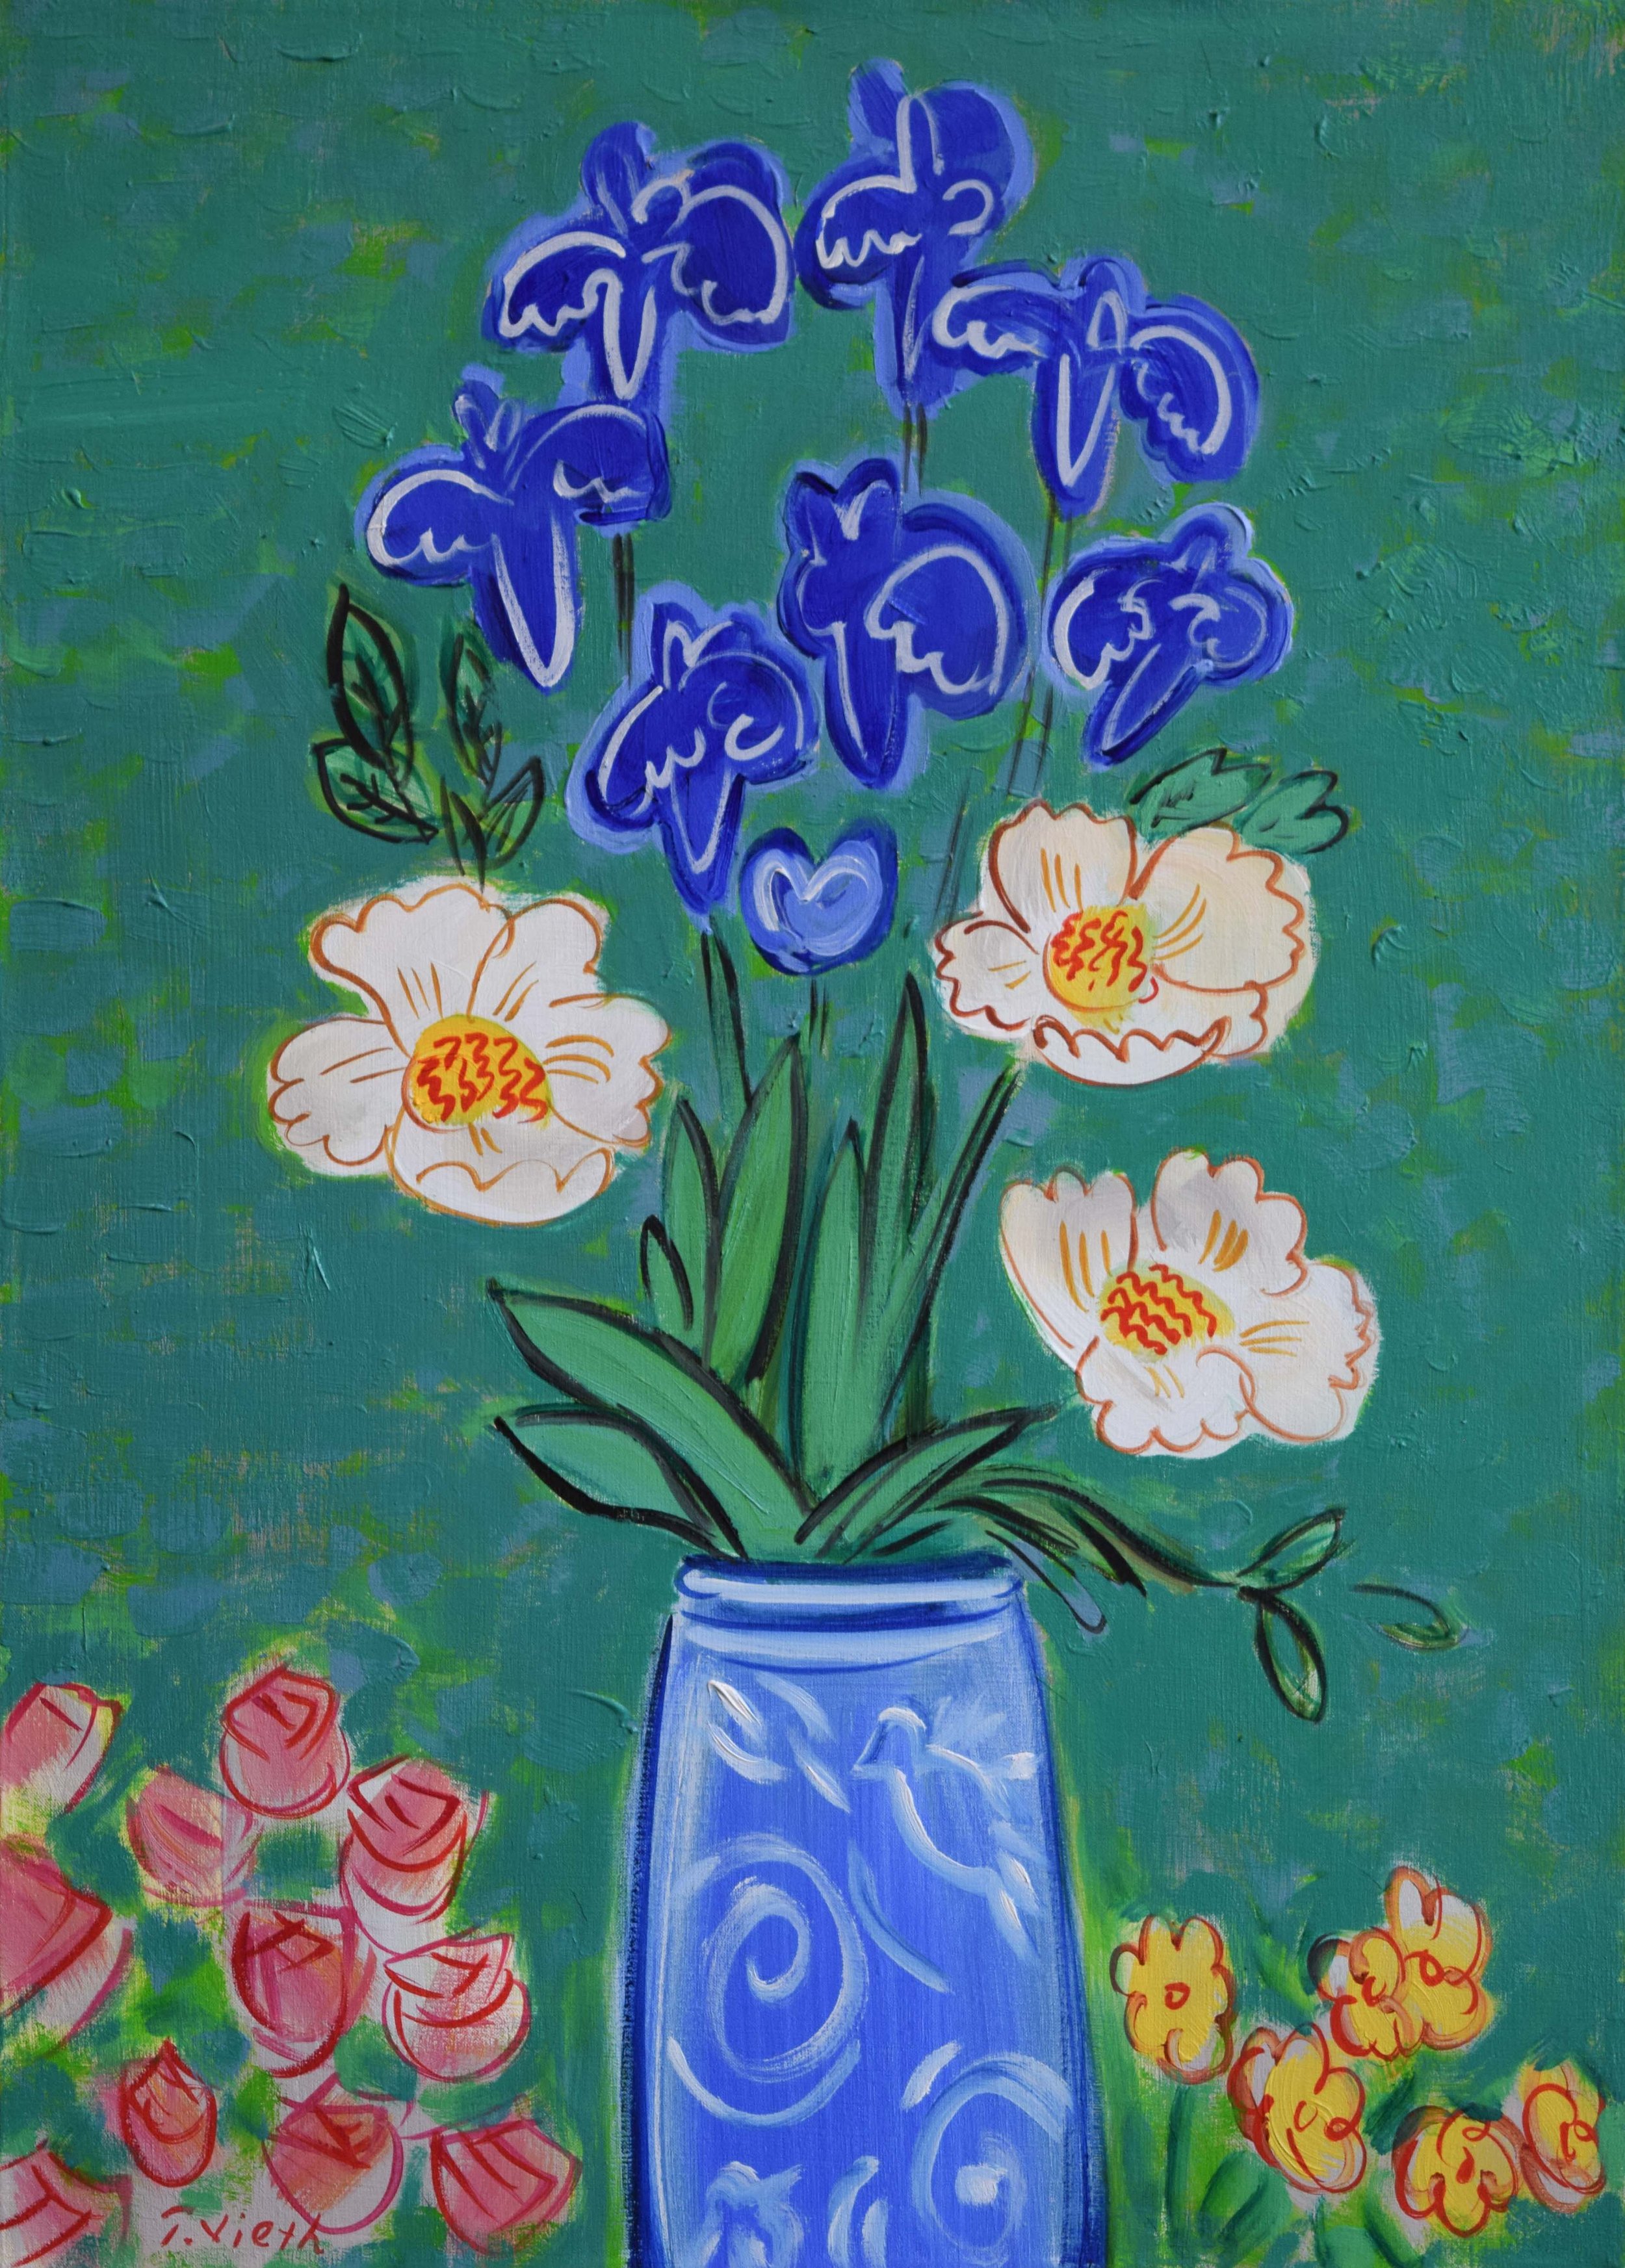 Bird Vase with Irises and Peonies